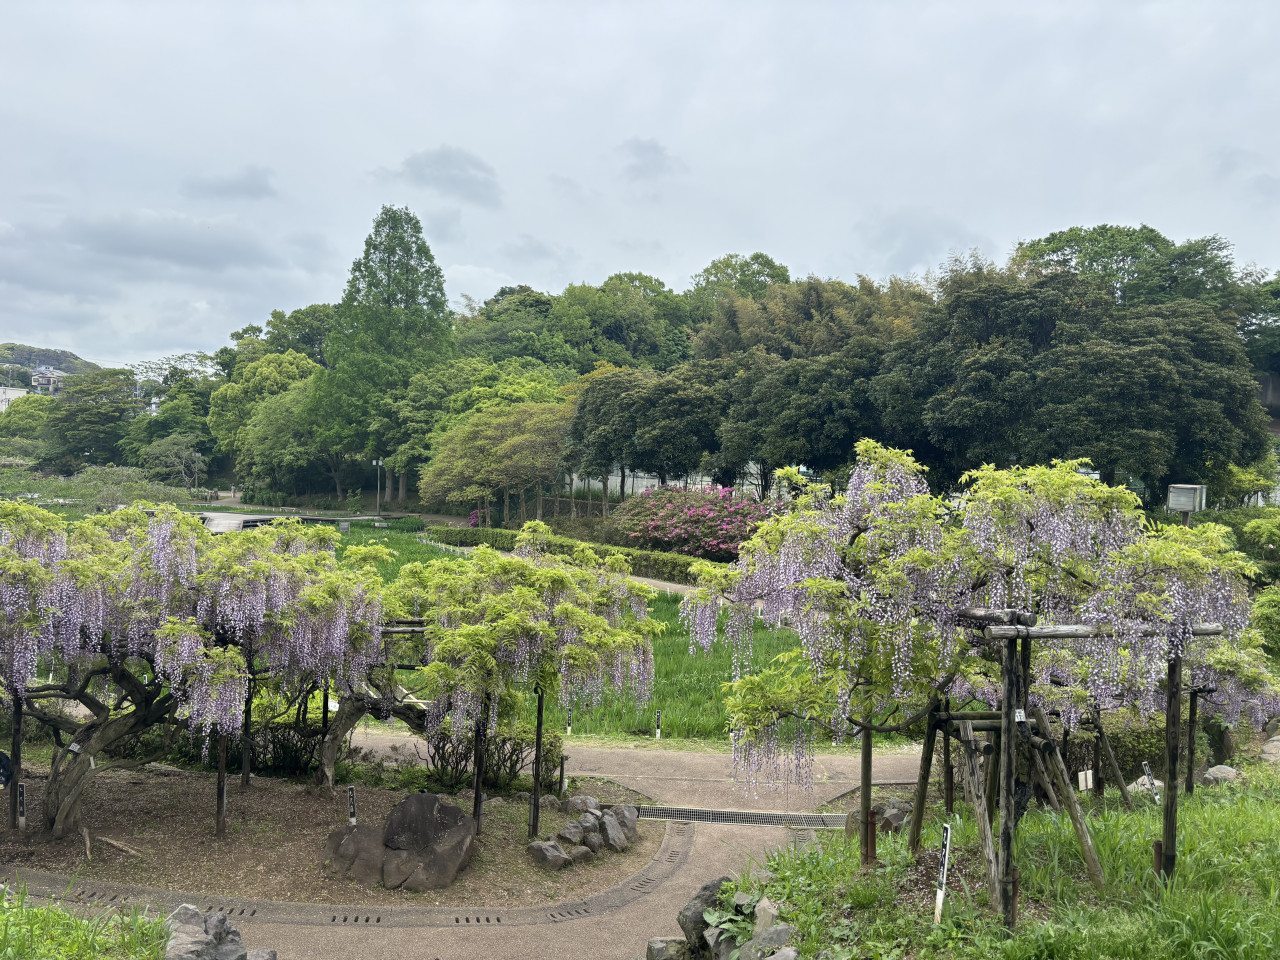 4月から藤の花が見頃となり、6月にはハナショウブが満開となります。
定期的にイベントが開催され、横須賀市内で人気のスポットです。